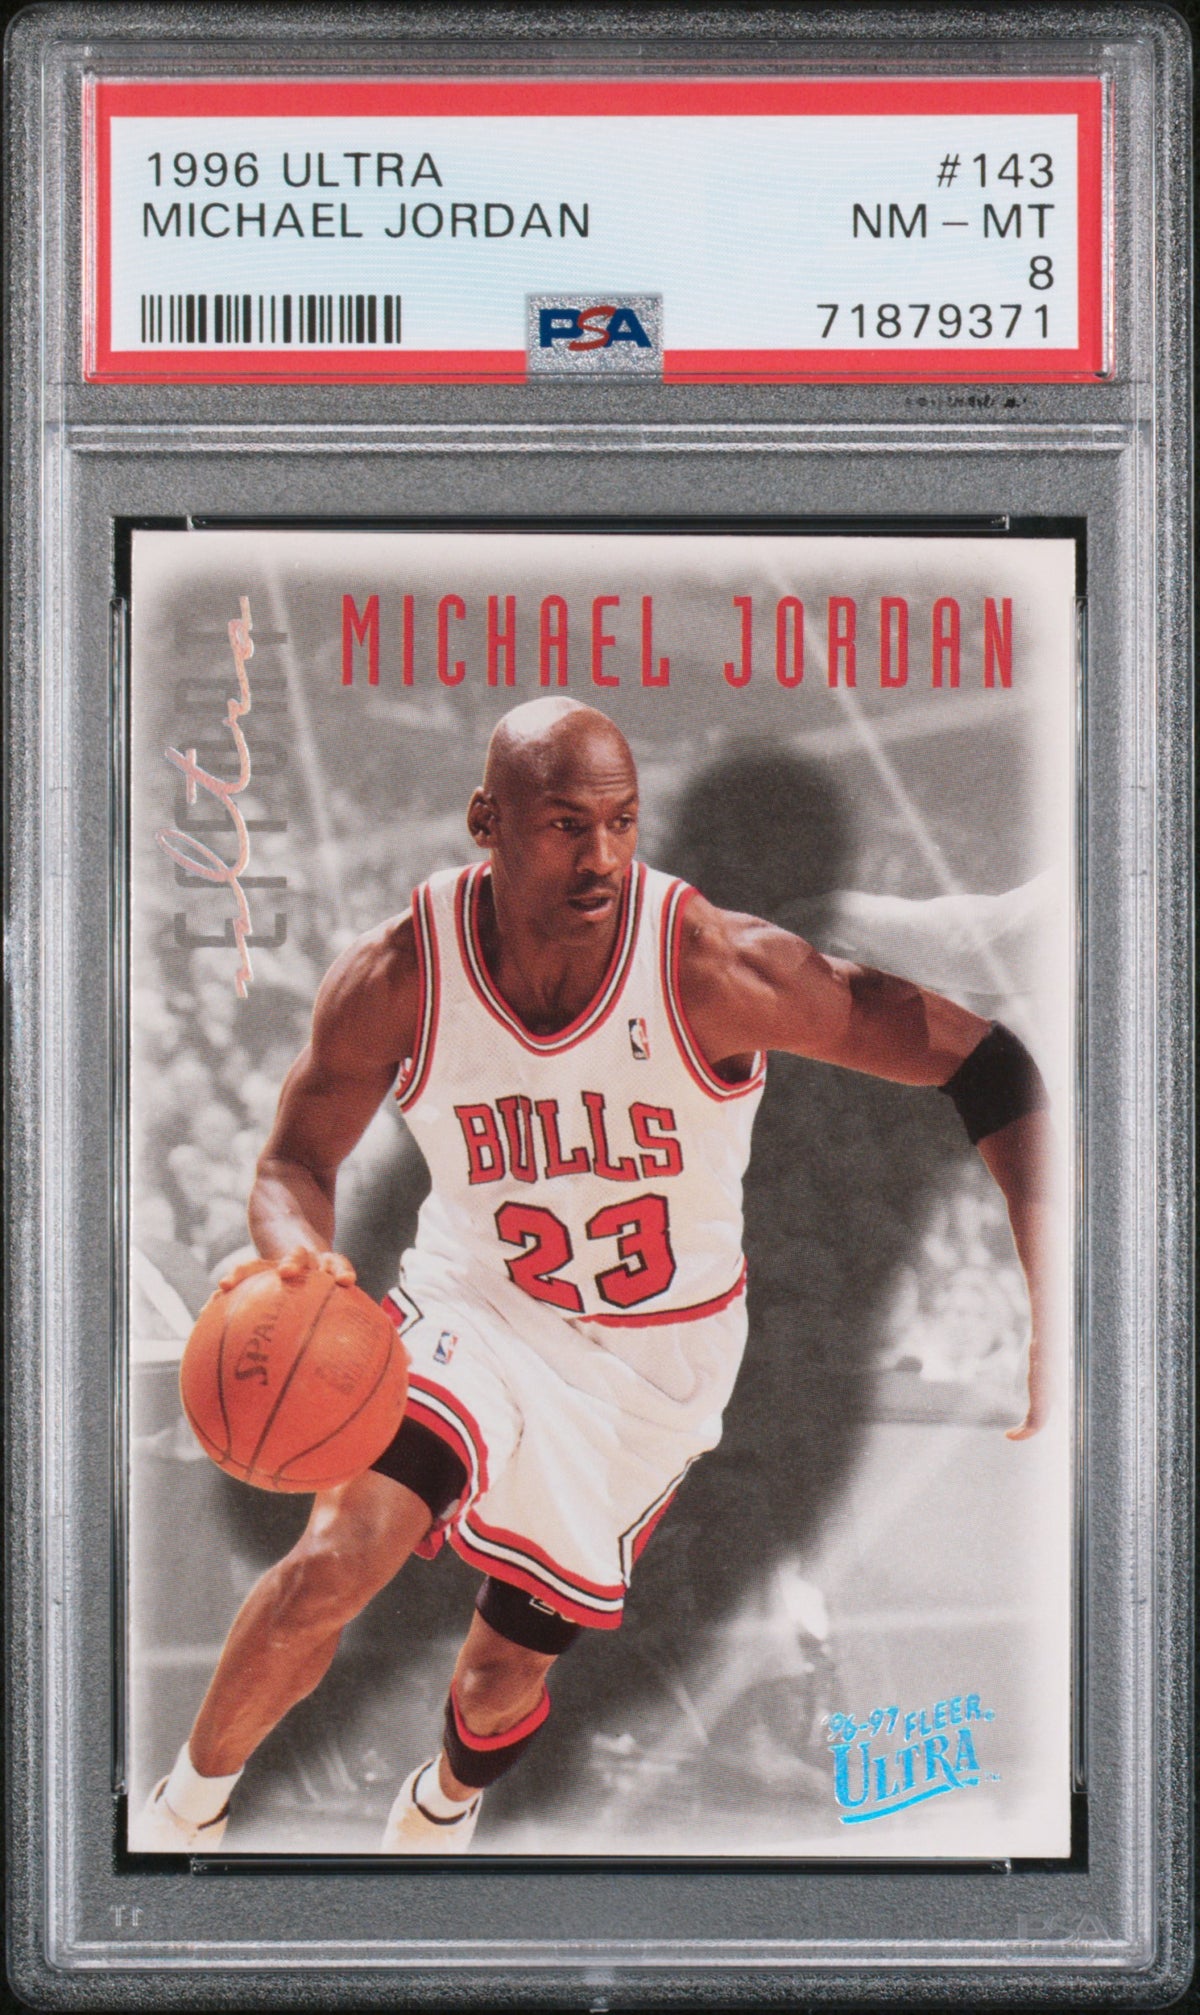 マイケル ジョーダン 1996 フリーア ウルトラ バスケットボール カード ...